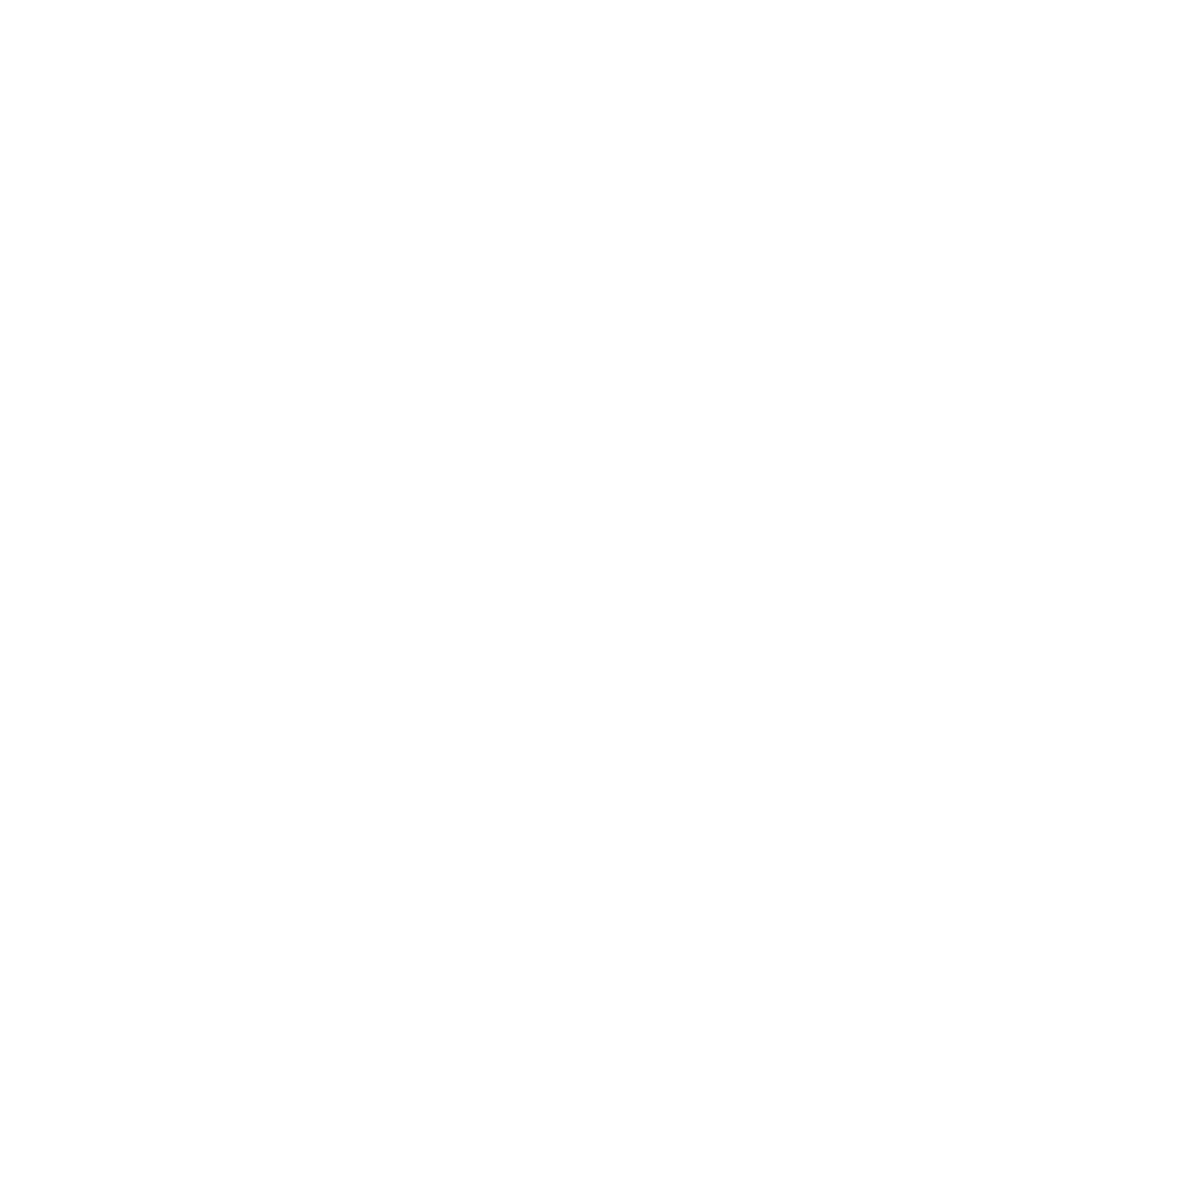 Sam Younesi